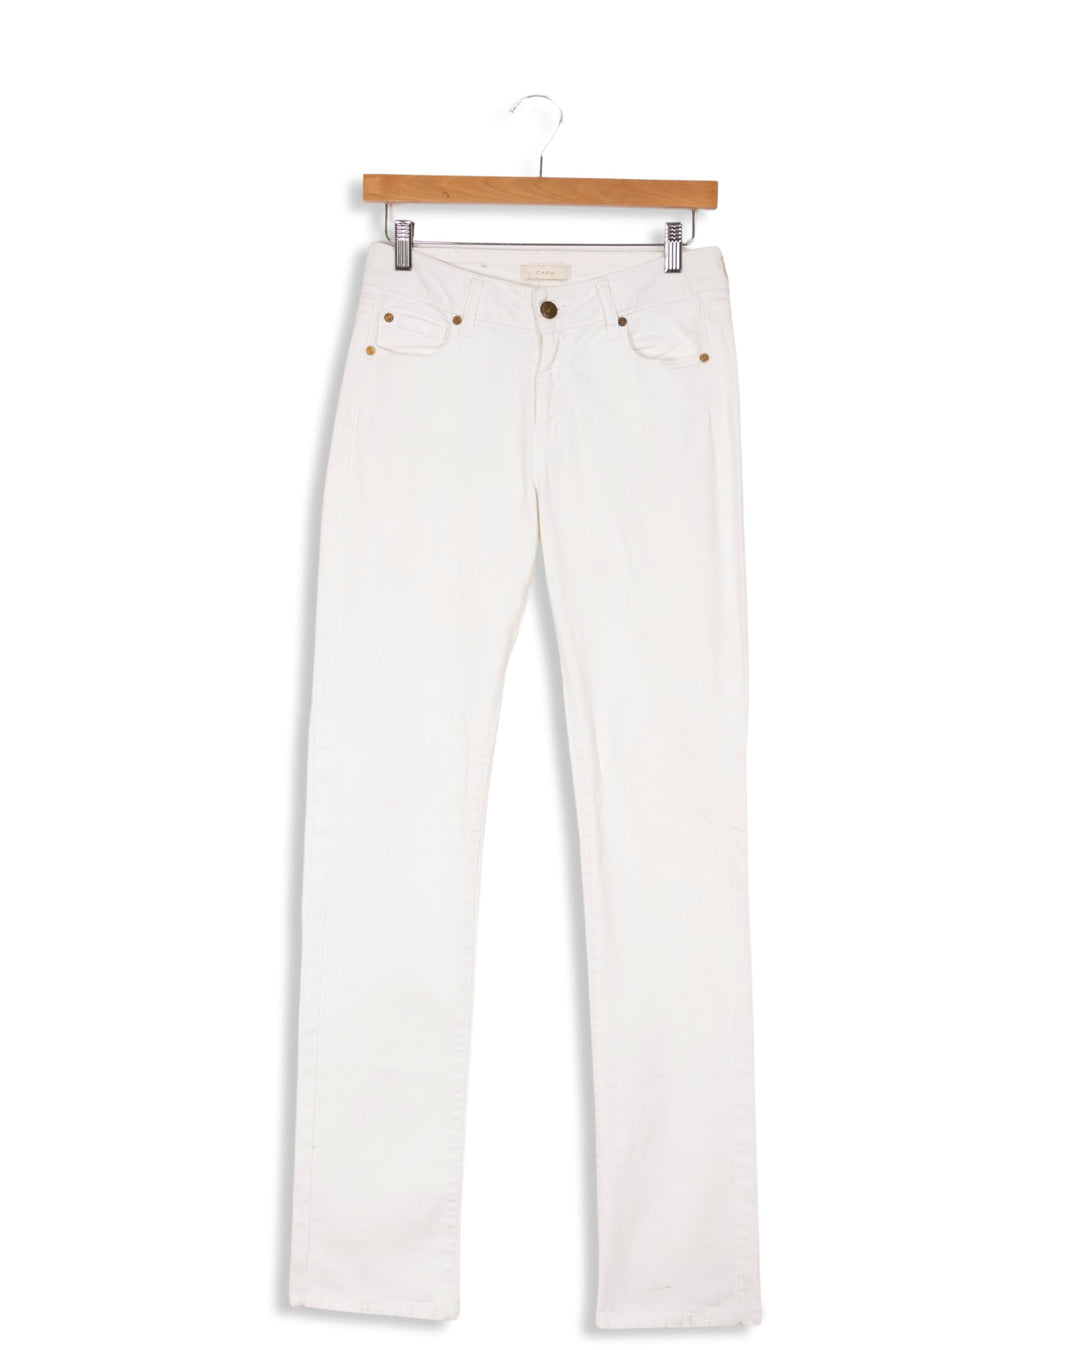 Pantalon blanc - 36